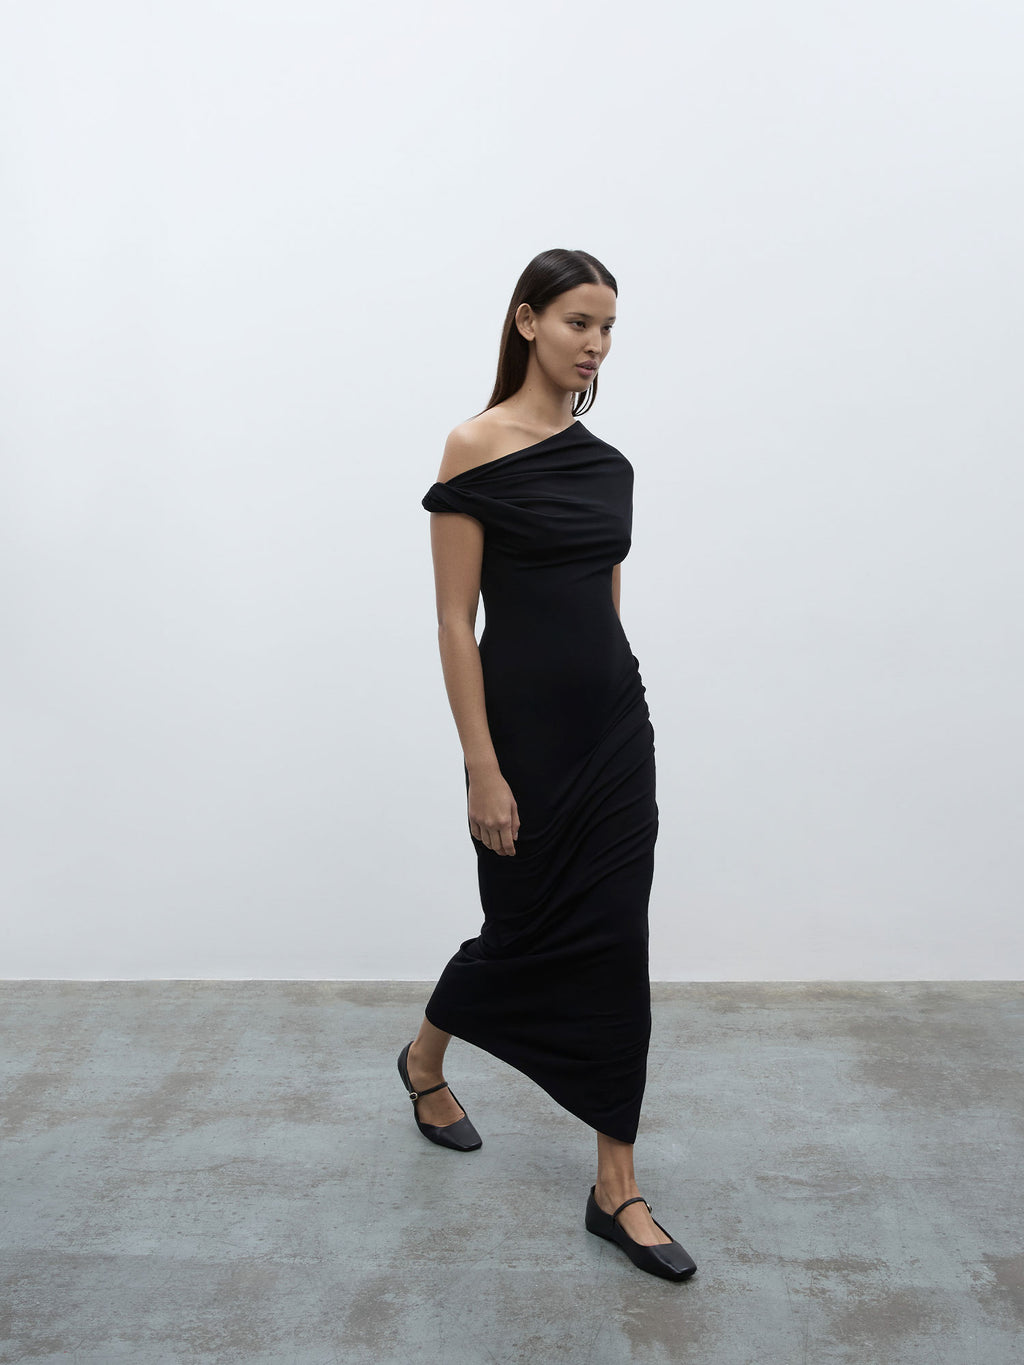 A model walking wearing the 05 Elemental Ida Dress in black